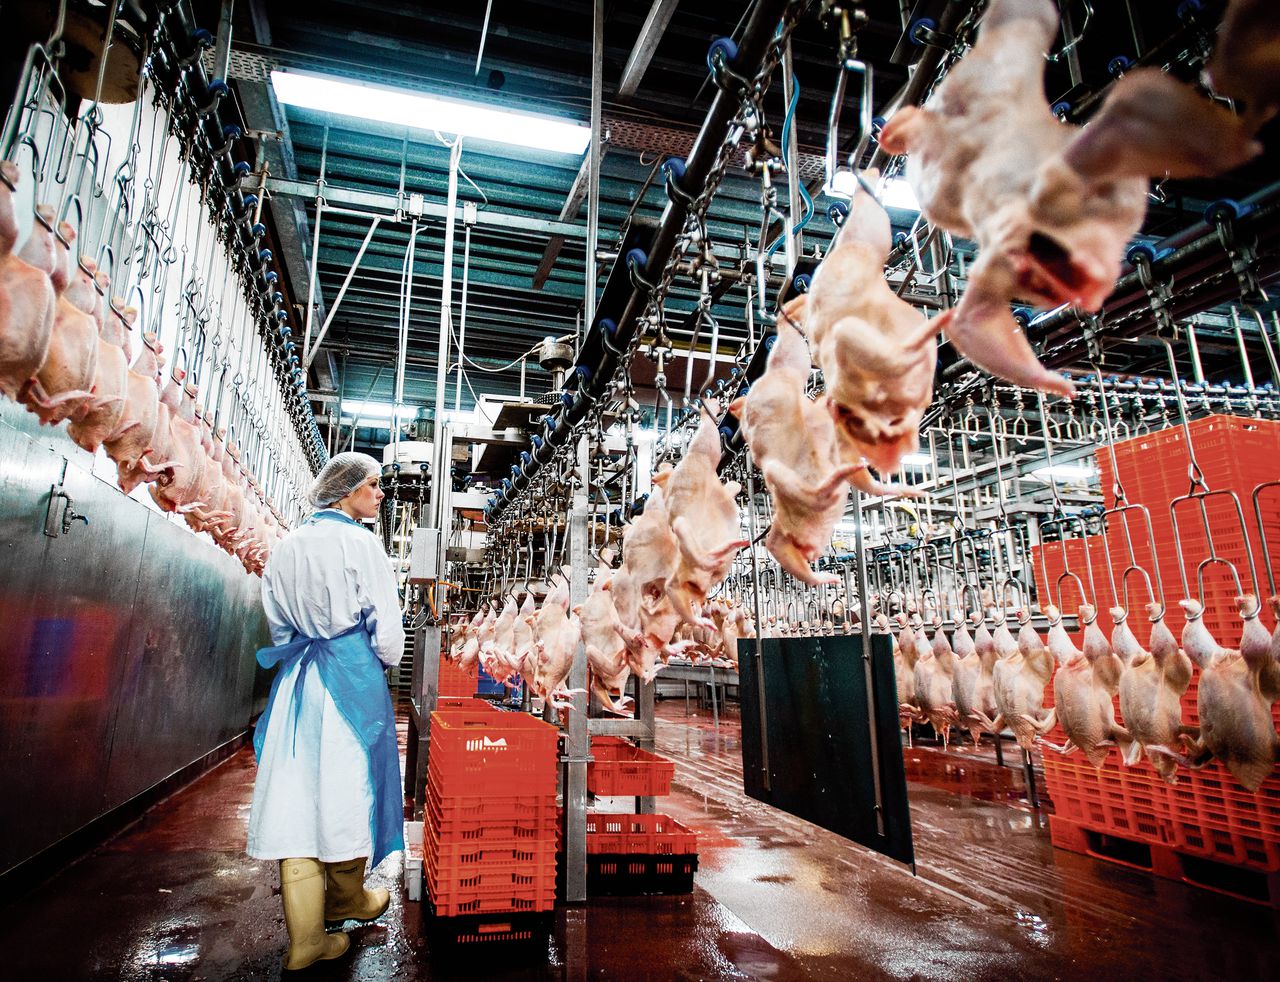 Het Beter Leven-keurmerk blijkt geen garantie voor diervriendelijke vleesproductie. Regels worden ook door bedrijven die het keurmerk dragen geschonden, blijkt uit onderzoek van actiegroep Ongehoord.